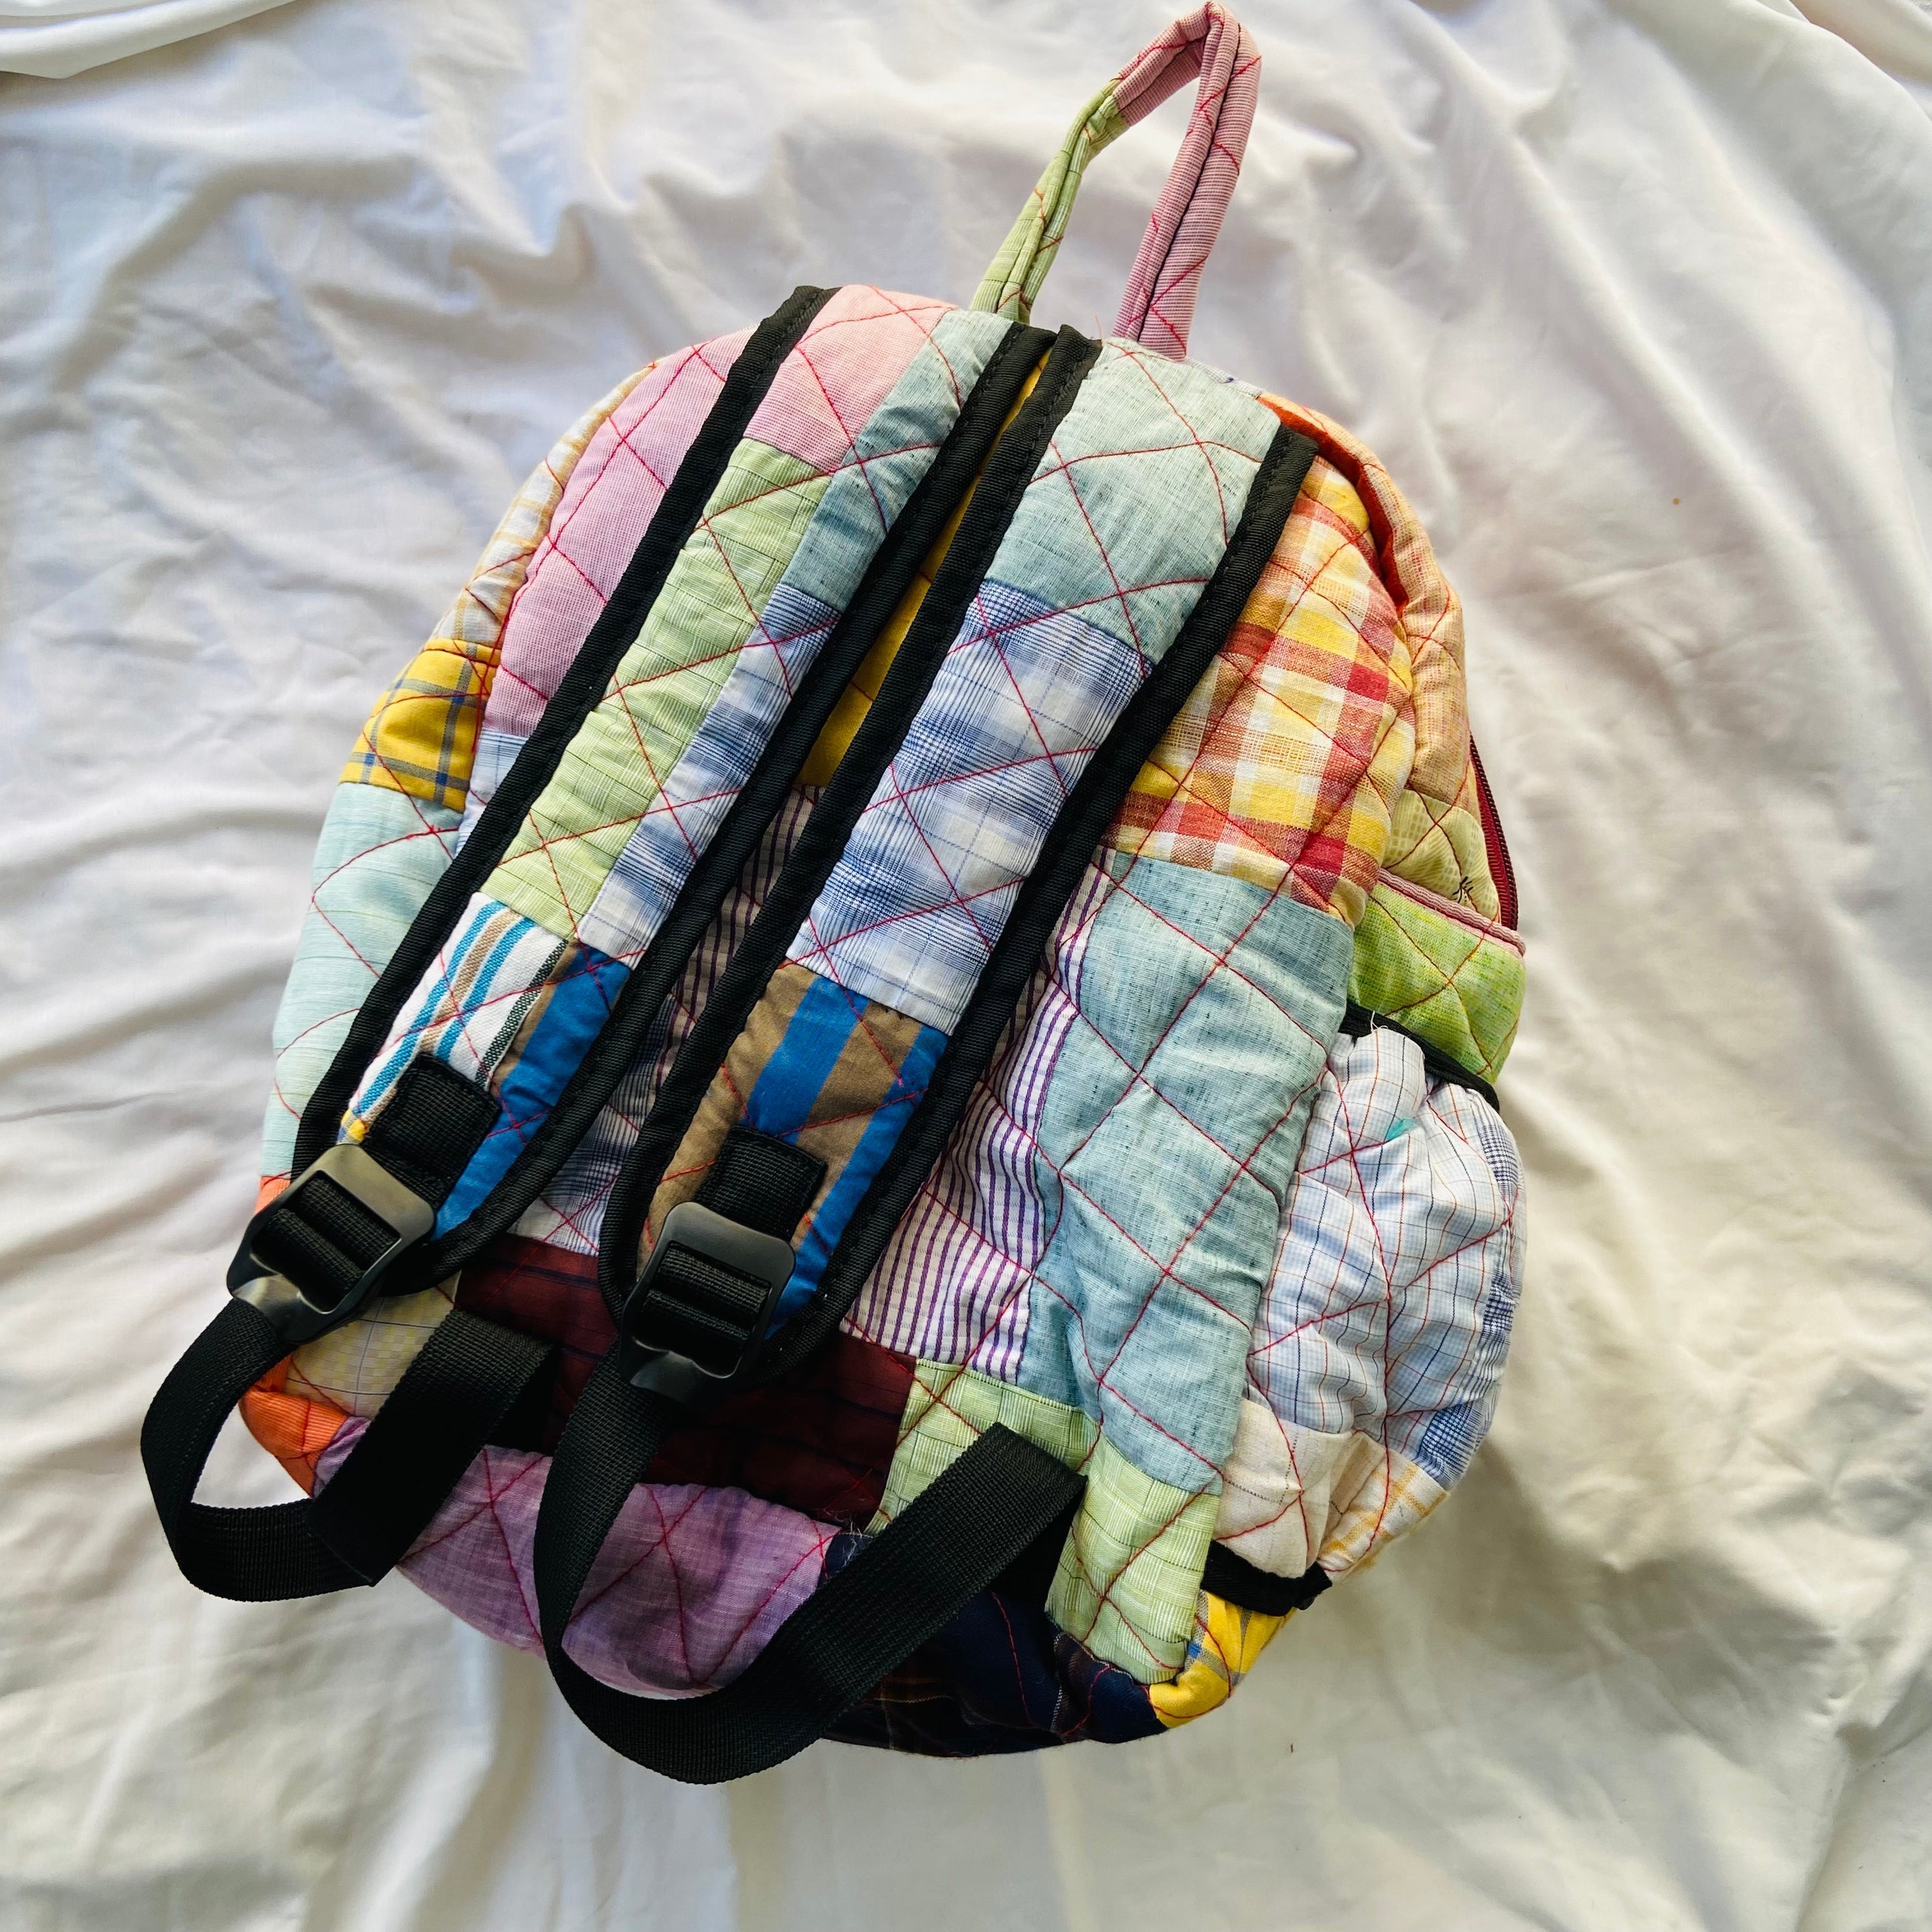 School Bag for Kids 2-4 Std Pink Dora Bag Elisa and Anna print Low Price Bag  #backtoschool #amazon - YouTube